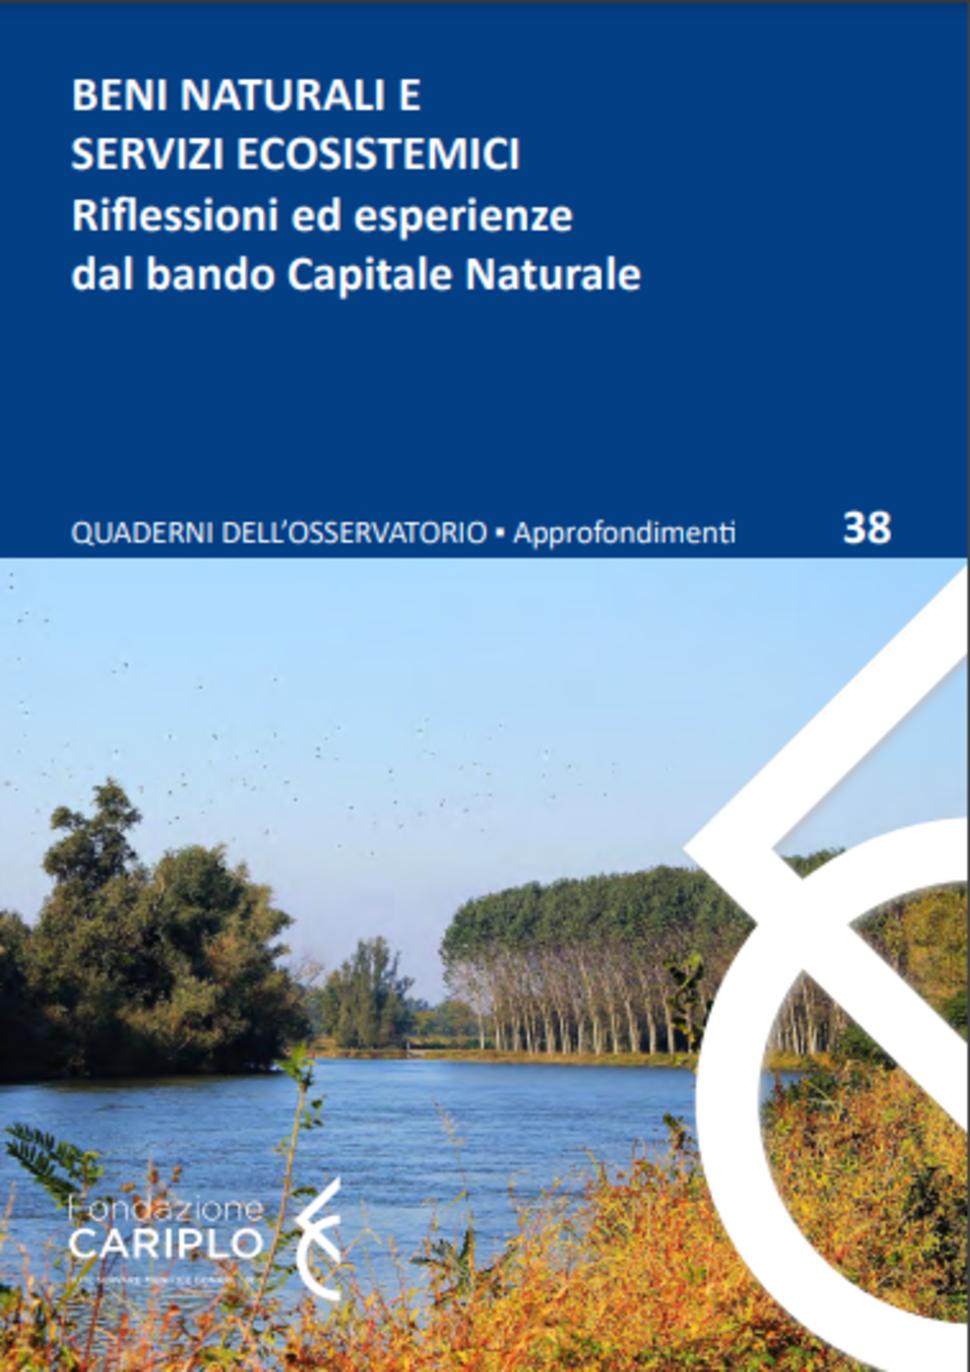 Quaderno n.38 'Beni naturali e Servizi ecosistemici'